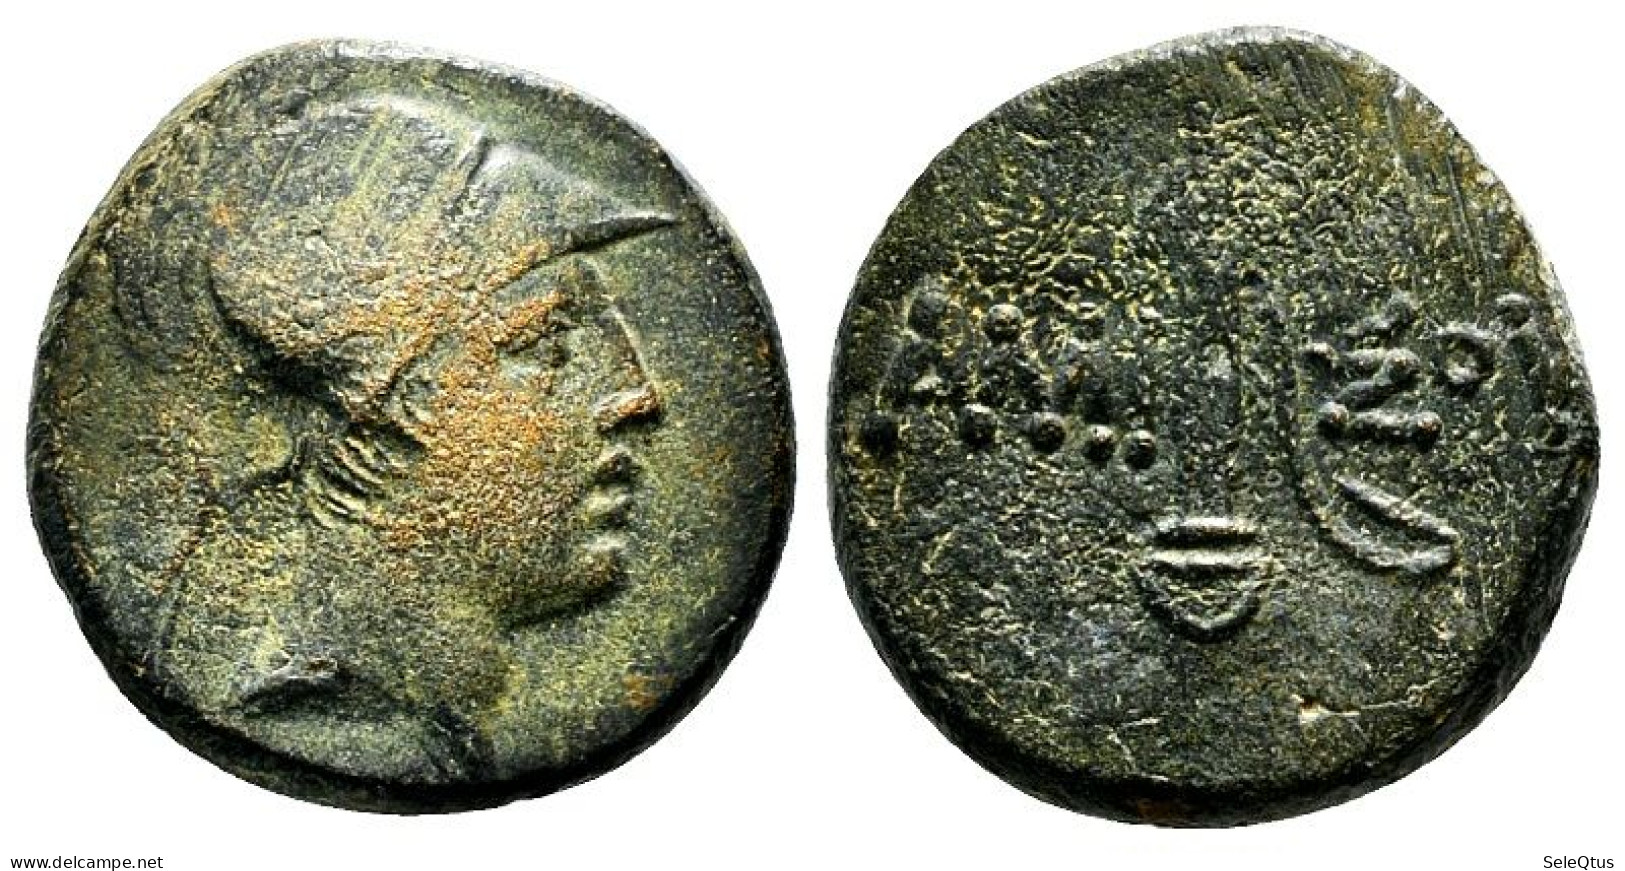 Monedas Antiguas - Ancient Coins (00139-010-0018) - Griekenland